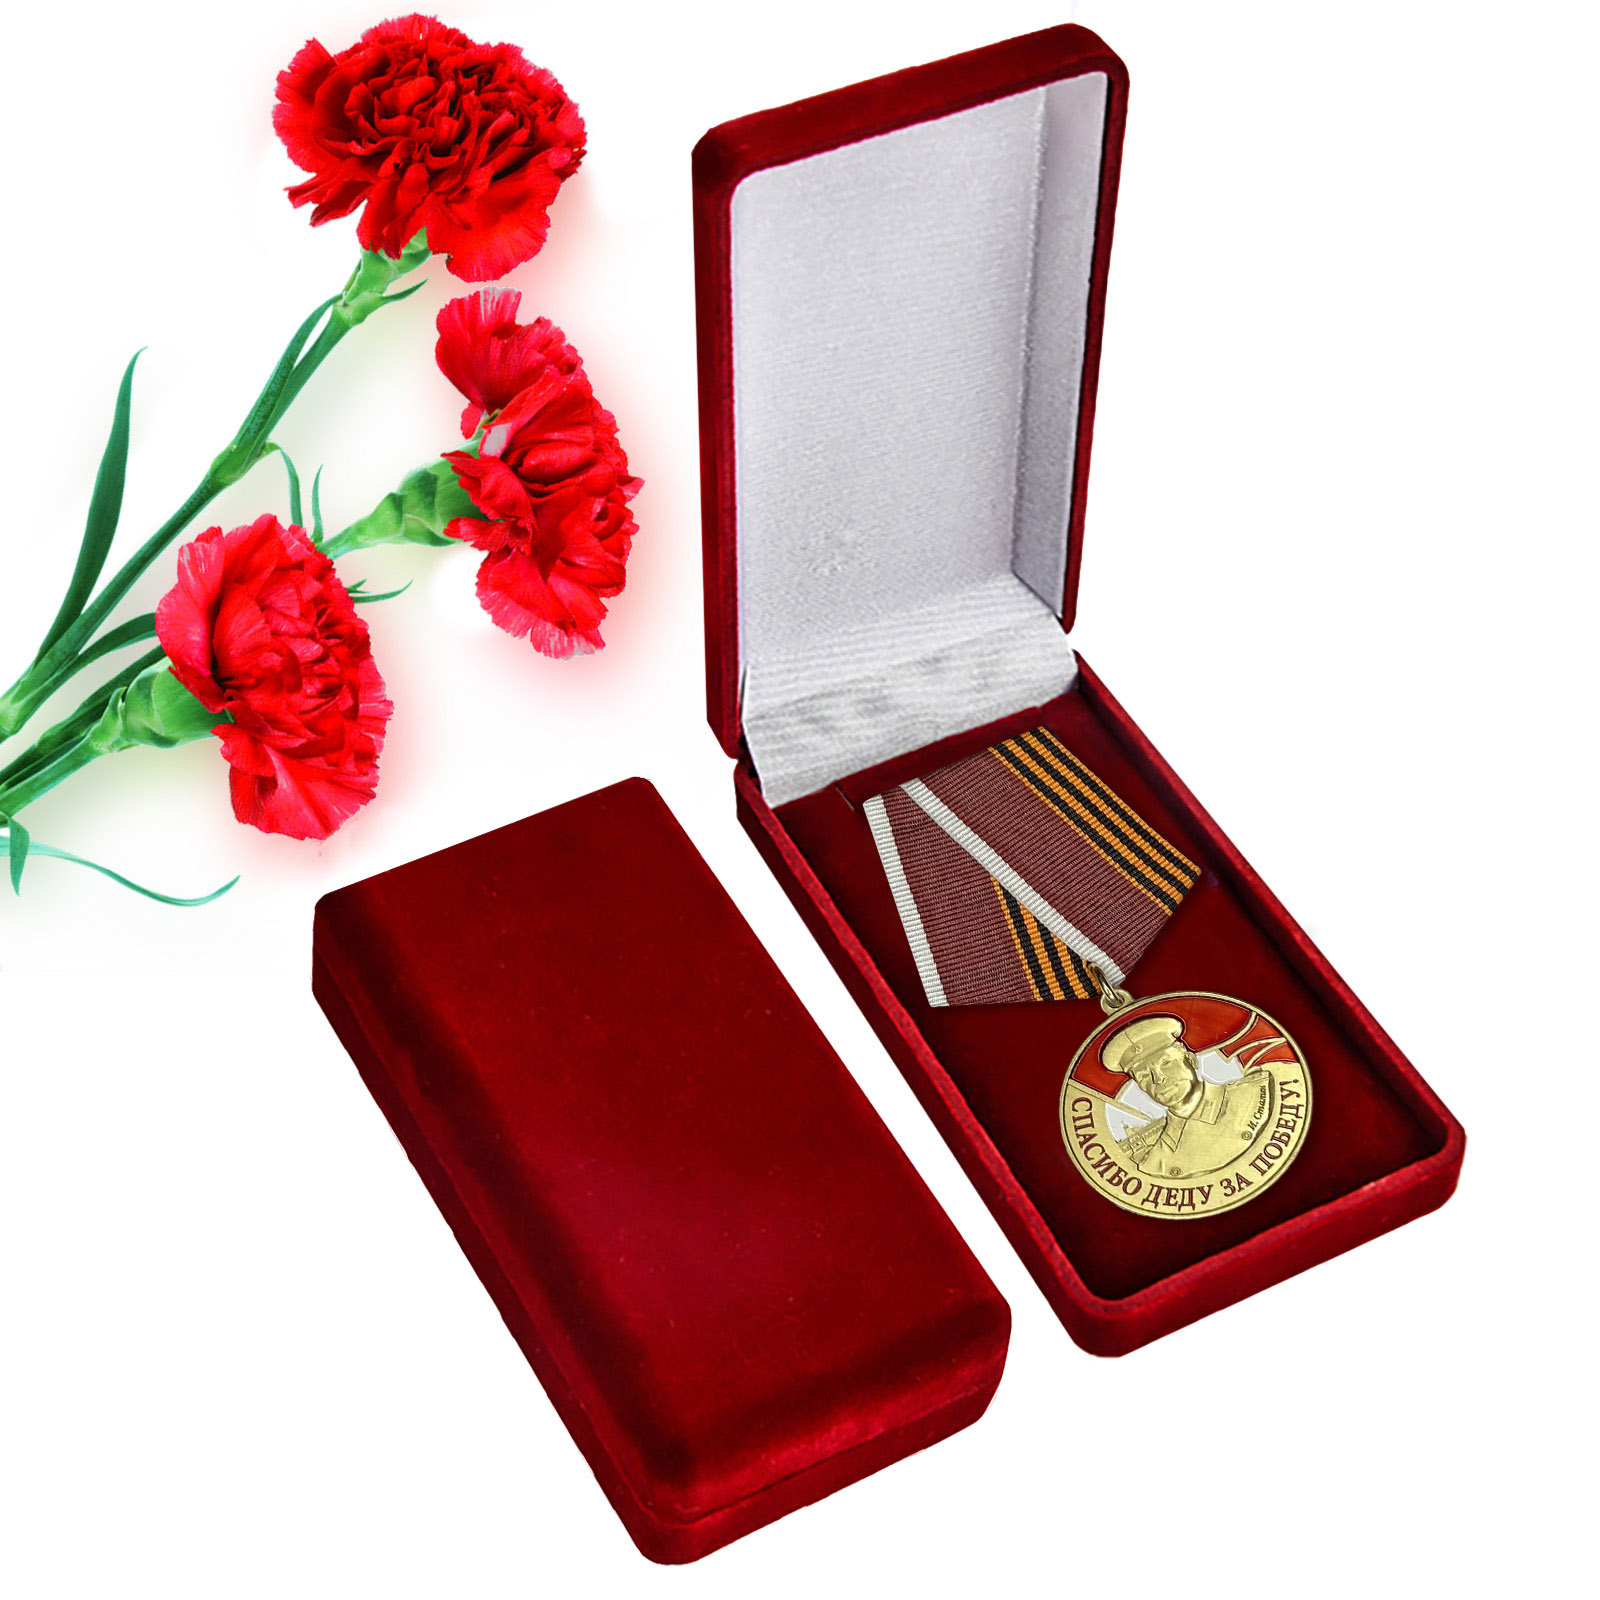 Купить латунную медаль со Сталиным Спасибо деду за Победу онлайн выгодно